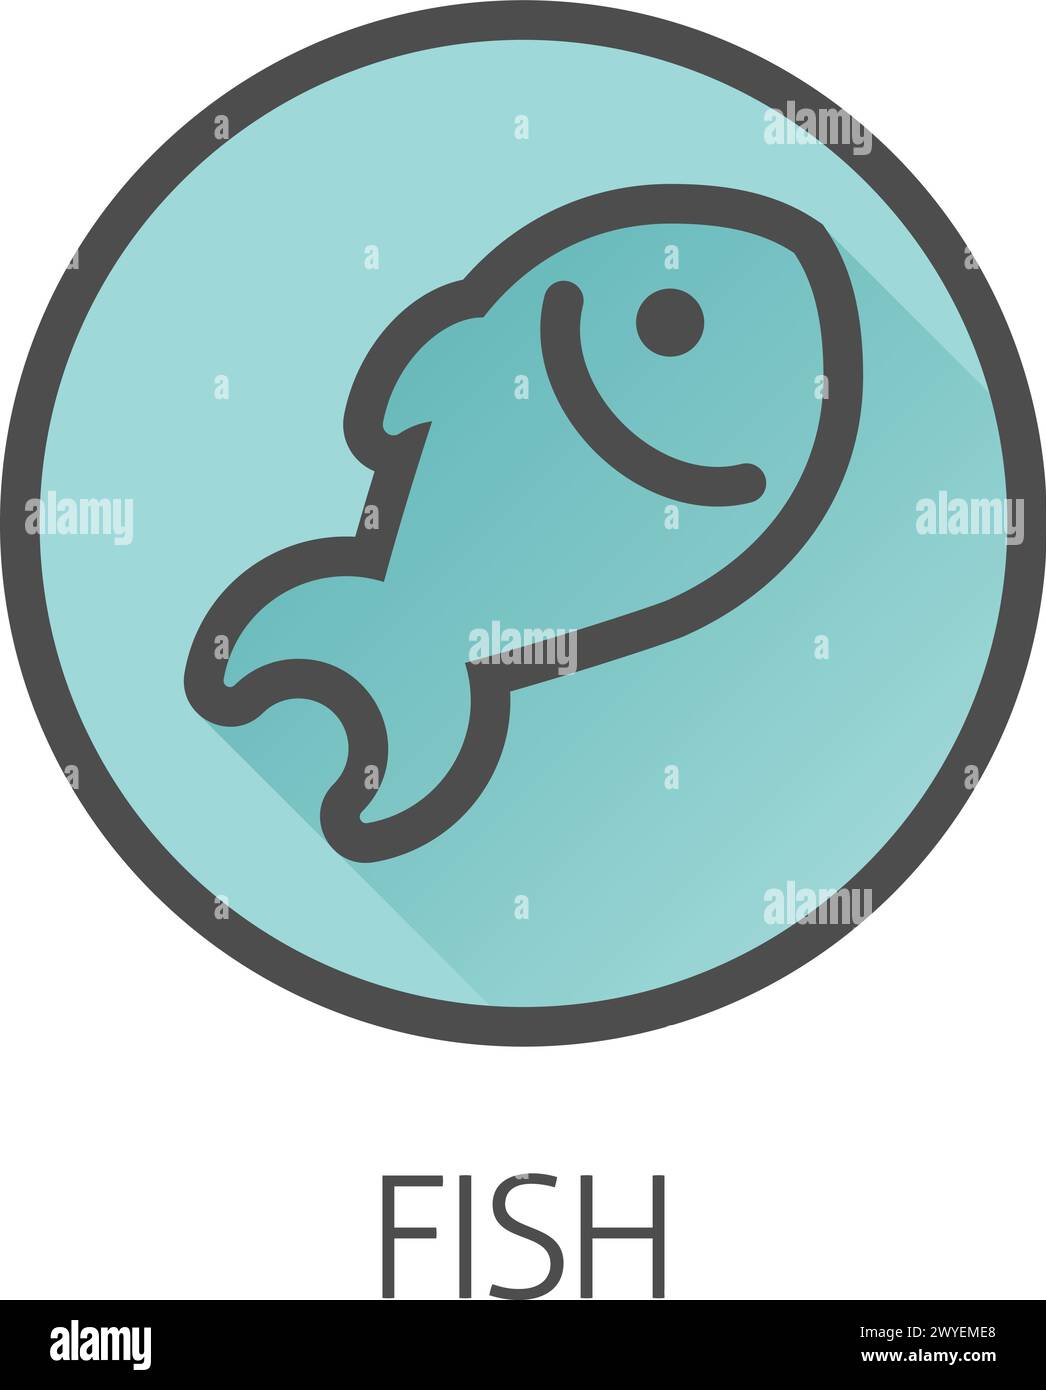 Fish Seafood Food Icon Konzept Stock Vektor